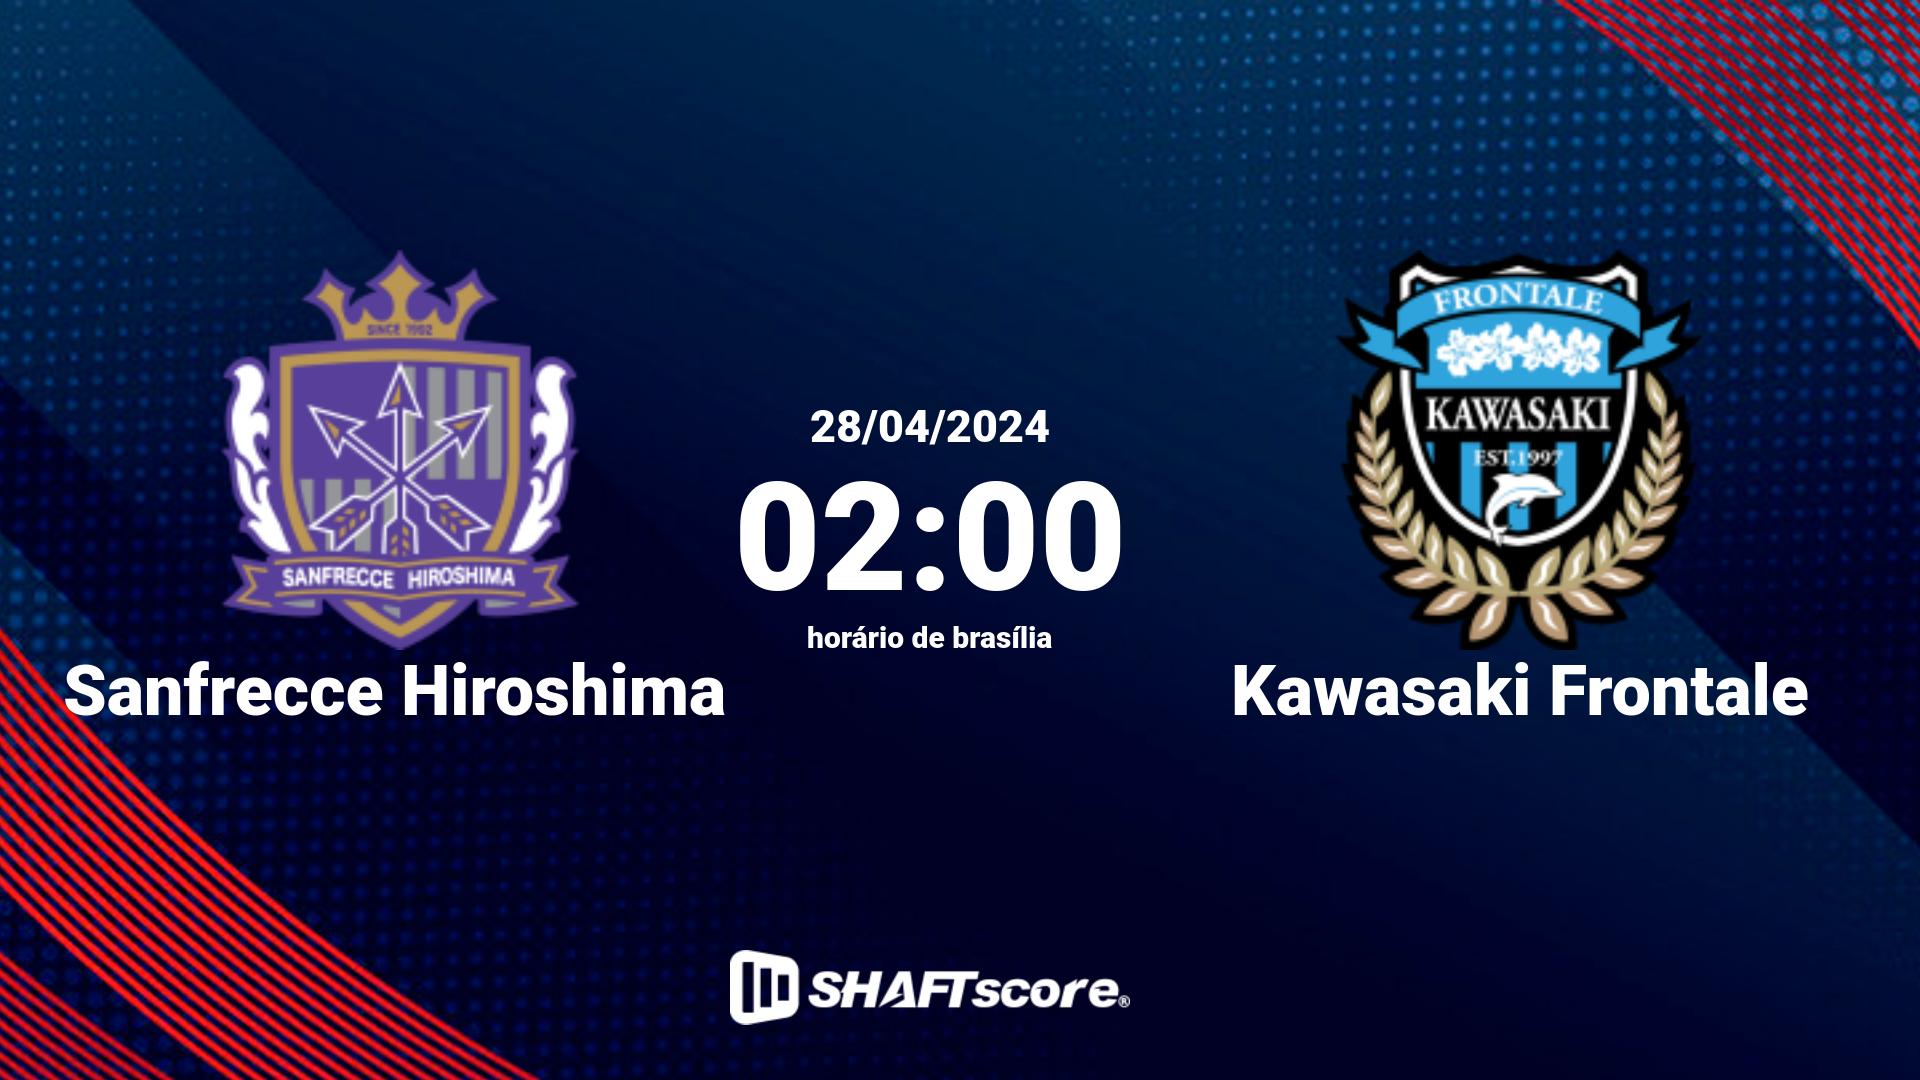 Estatísticas do jogo Sanfrecce Hiroshima vs Kawasaki Frontale 28.04 02:00